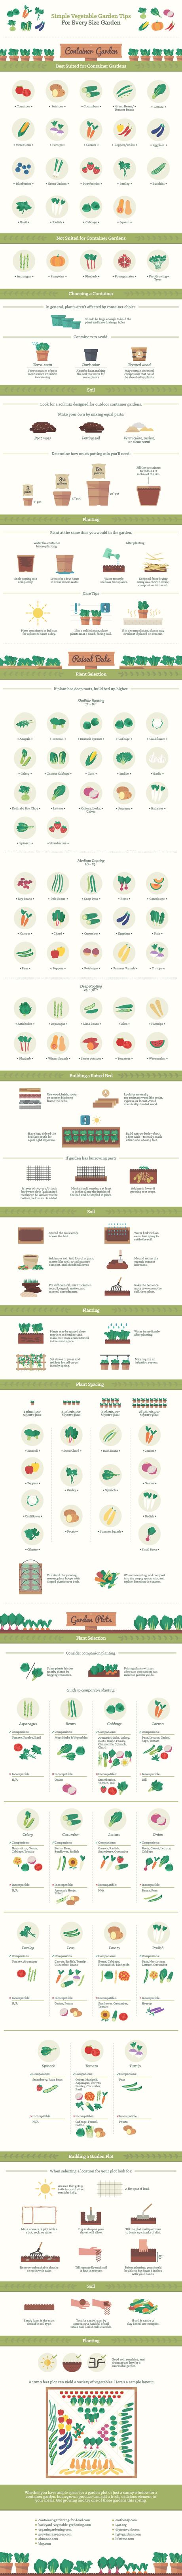 Vegetable Gardening Tips for every sized garden